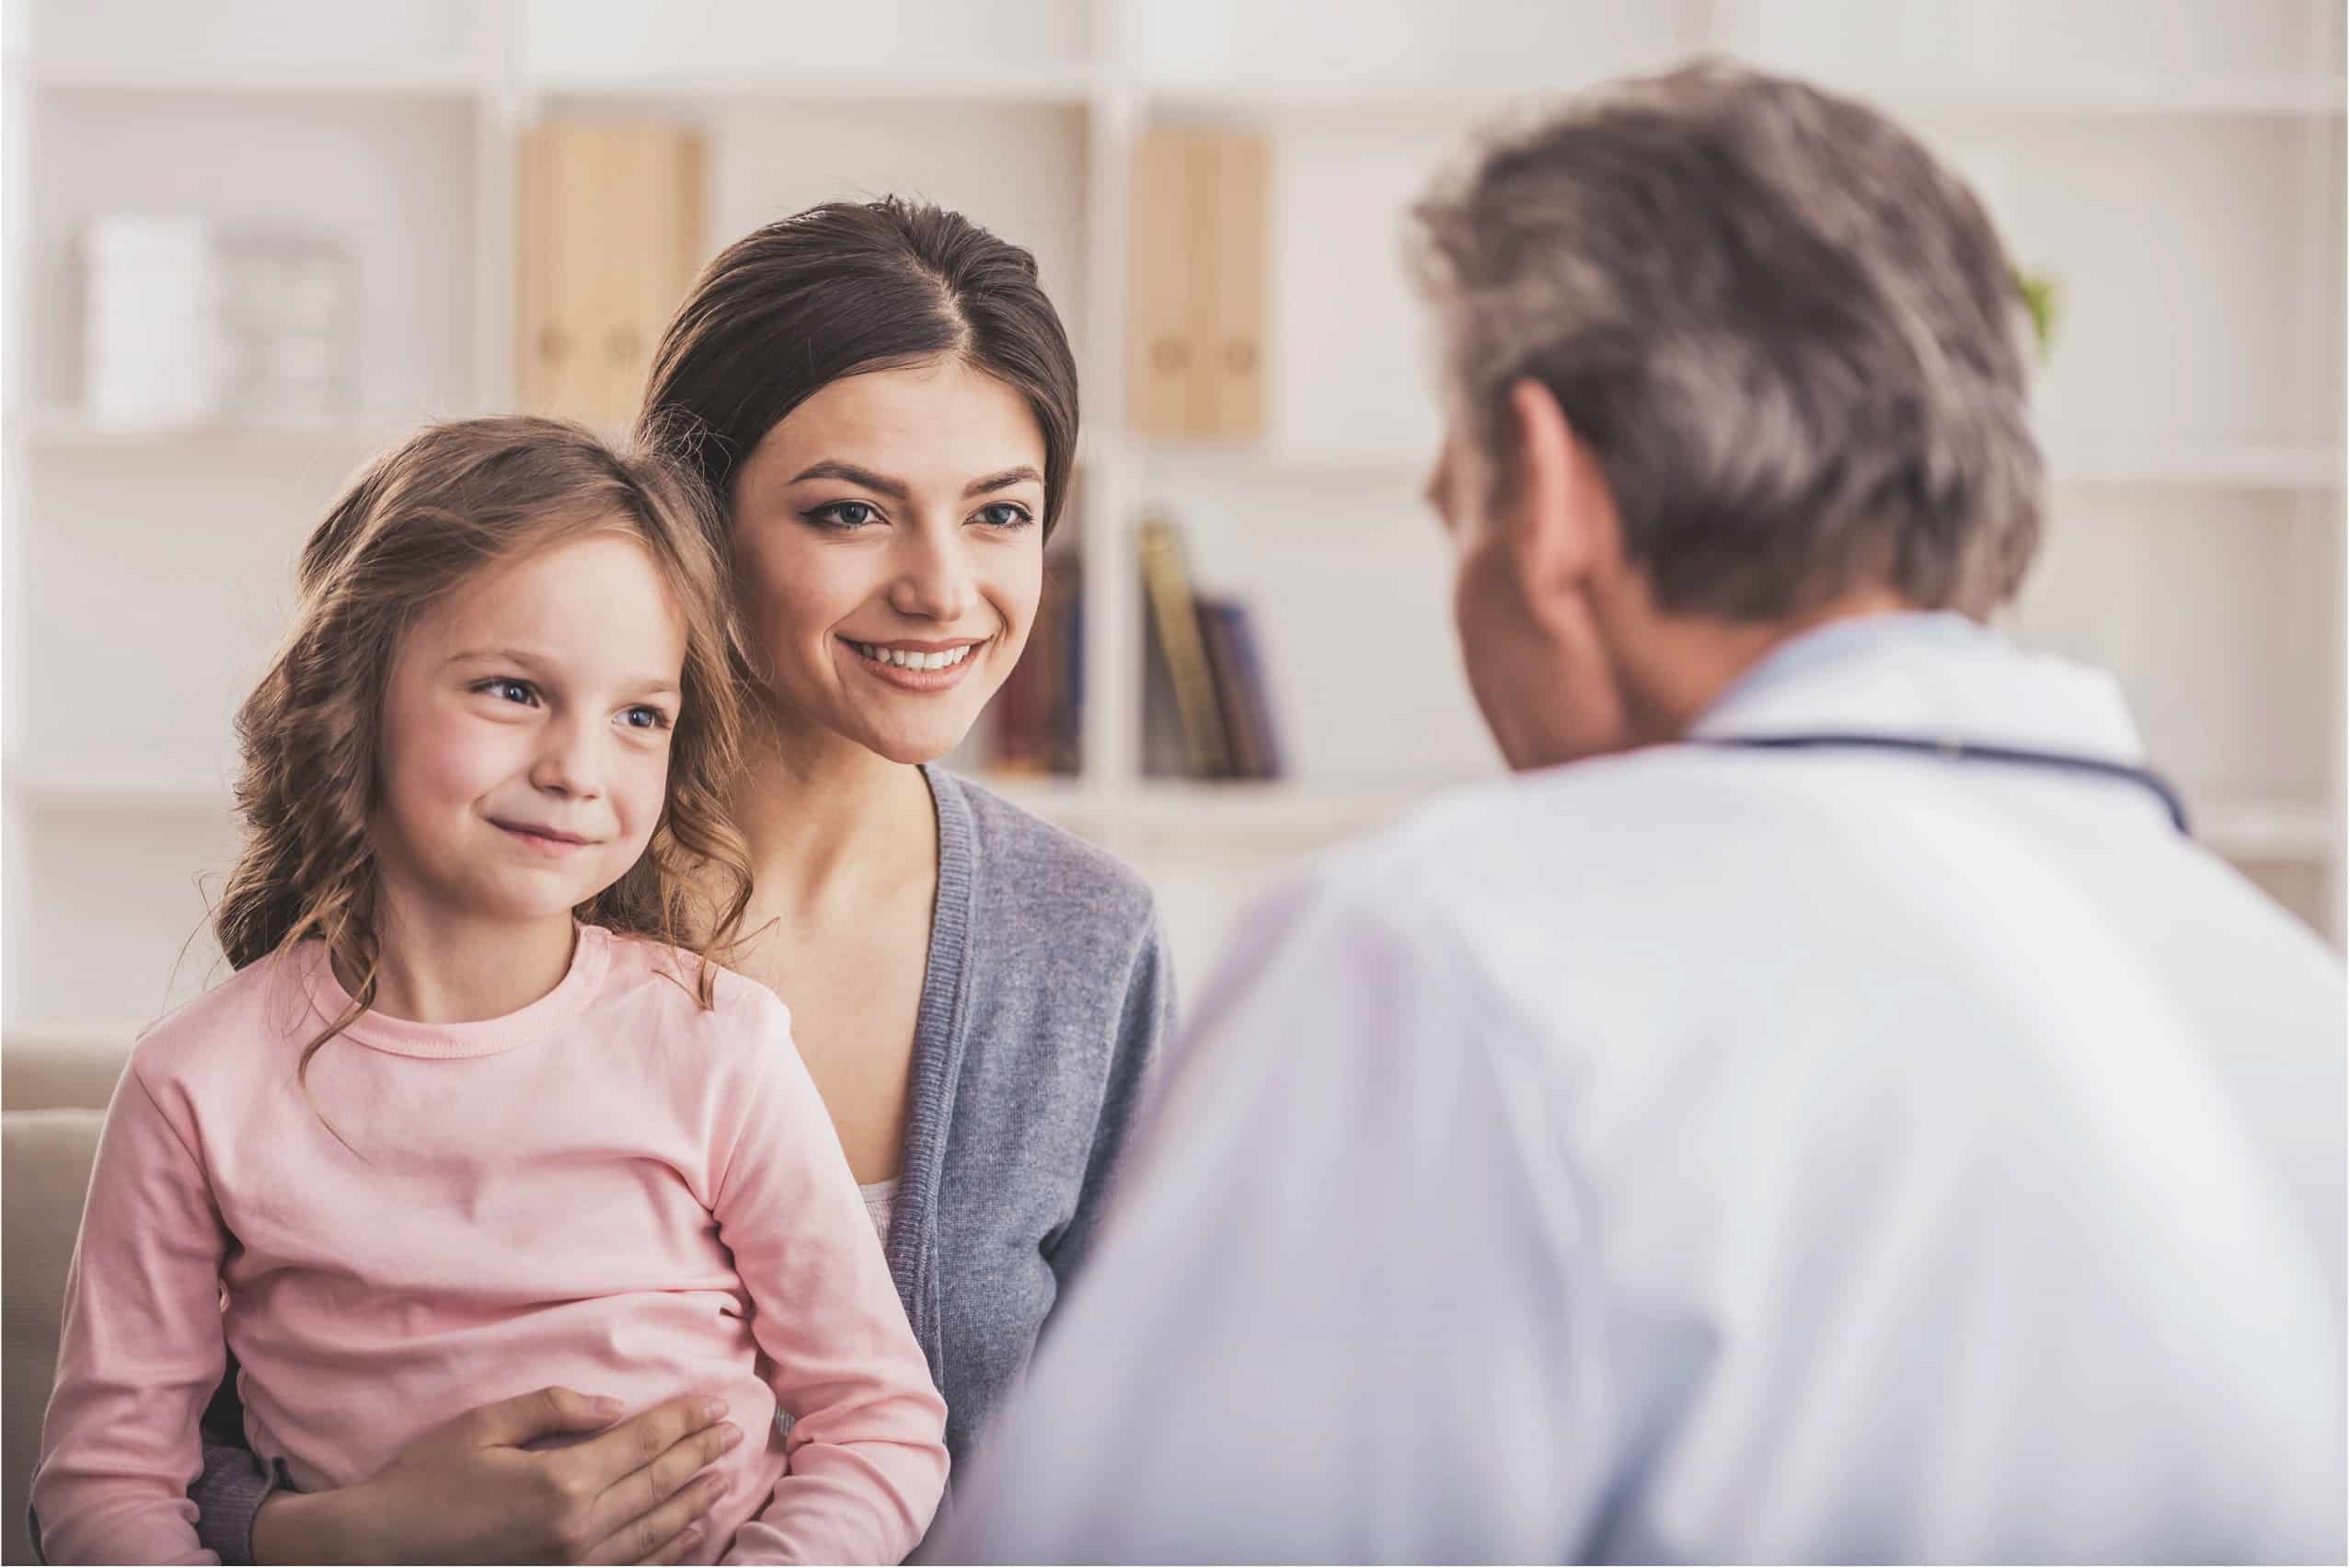 Seguro médico familiar: claves para elegirlo bien